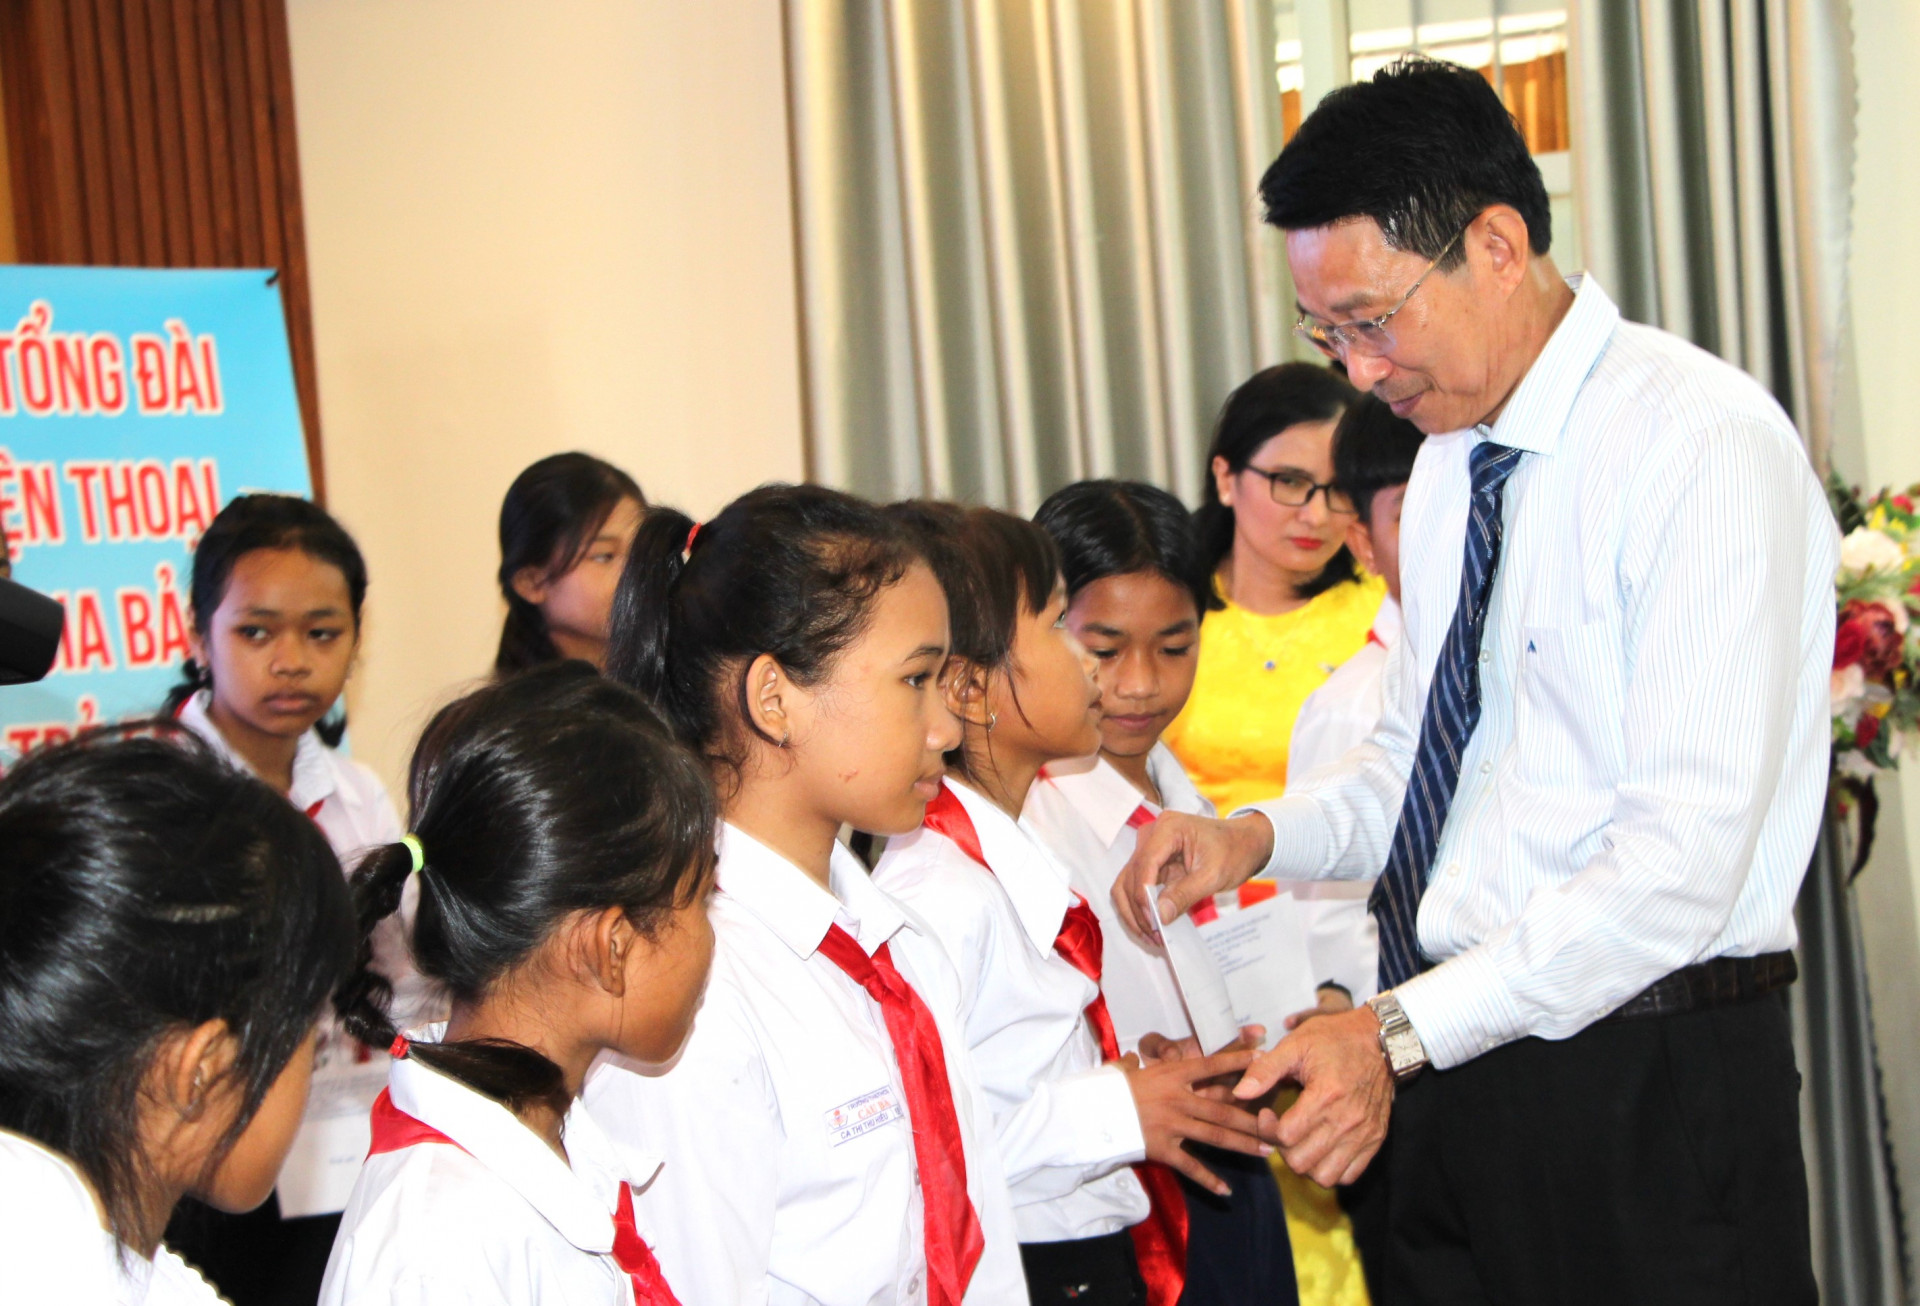 Đồng chí Đinh Văn Thiệu trao học bổng cho học sinh nghèo vượt khó học tập tốt.